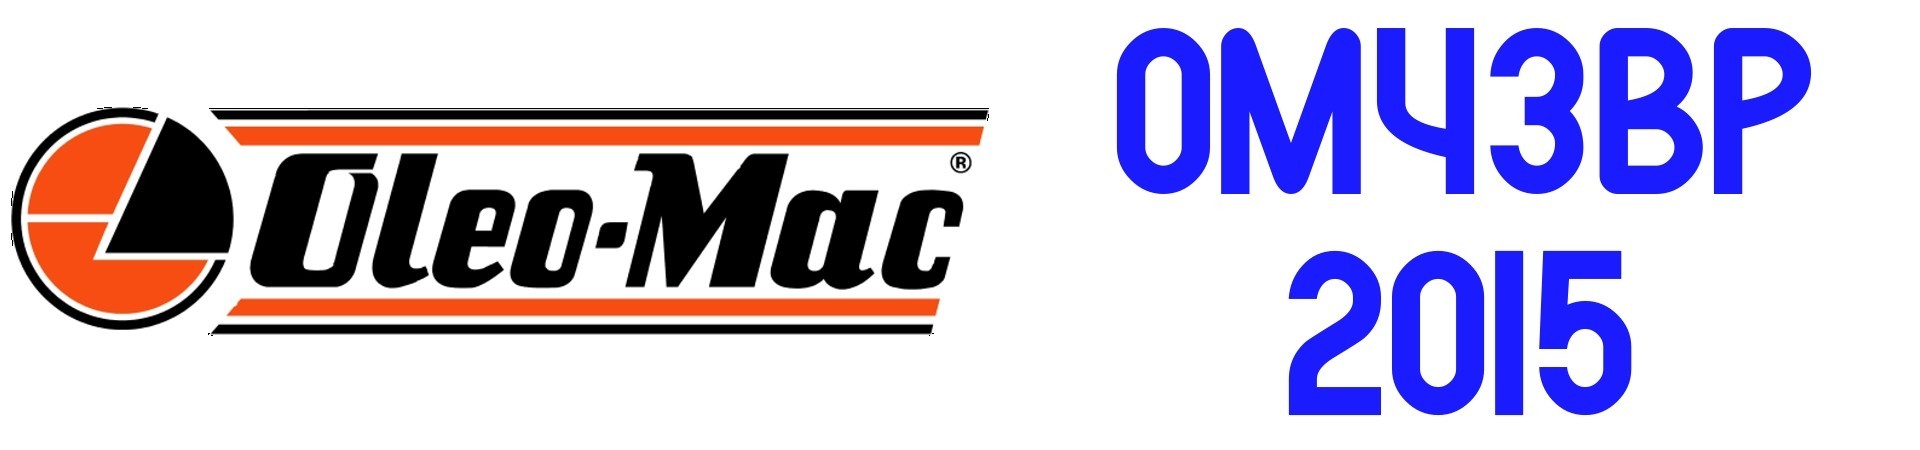 RECAMBIOS Desbrozadora Oleo Mac OM 43BP de 2015 al Mejor PRECIO